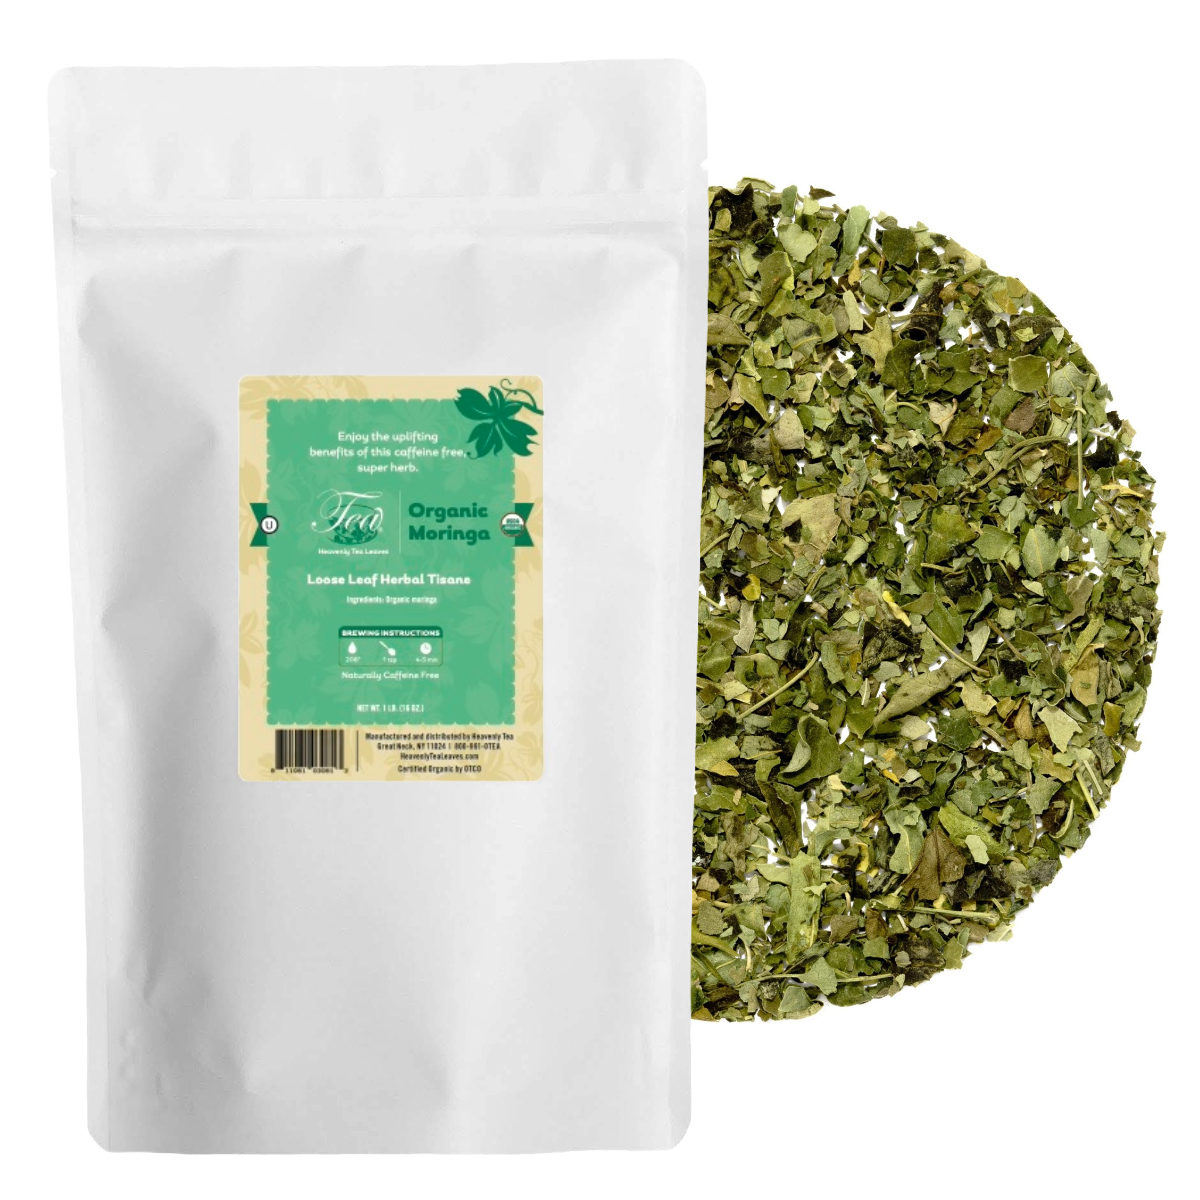 Organic Moringa, Bulk Loose Leaf Herbal Tisane | - Wellness Loose Leaf Tea | Heavenly Tea Leaves